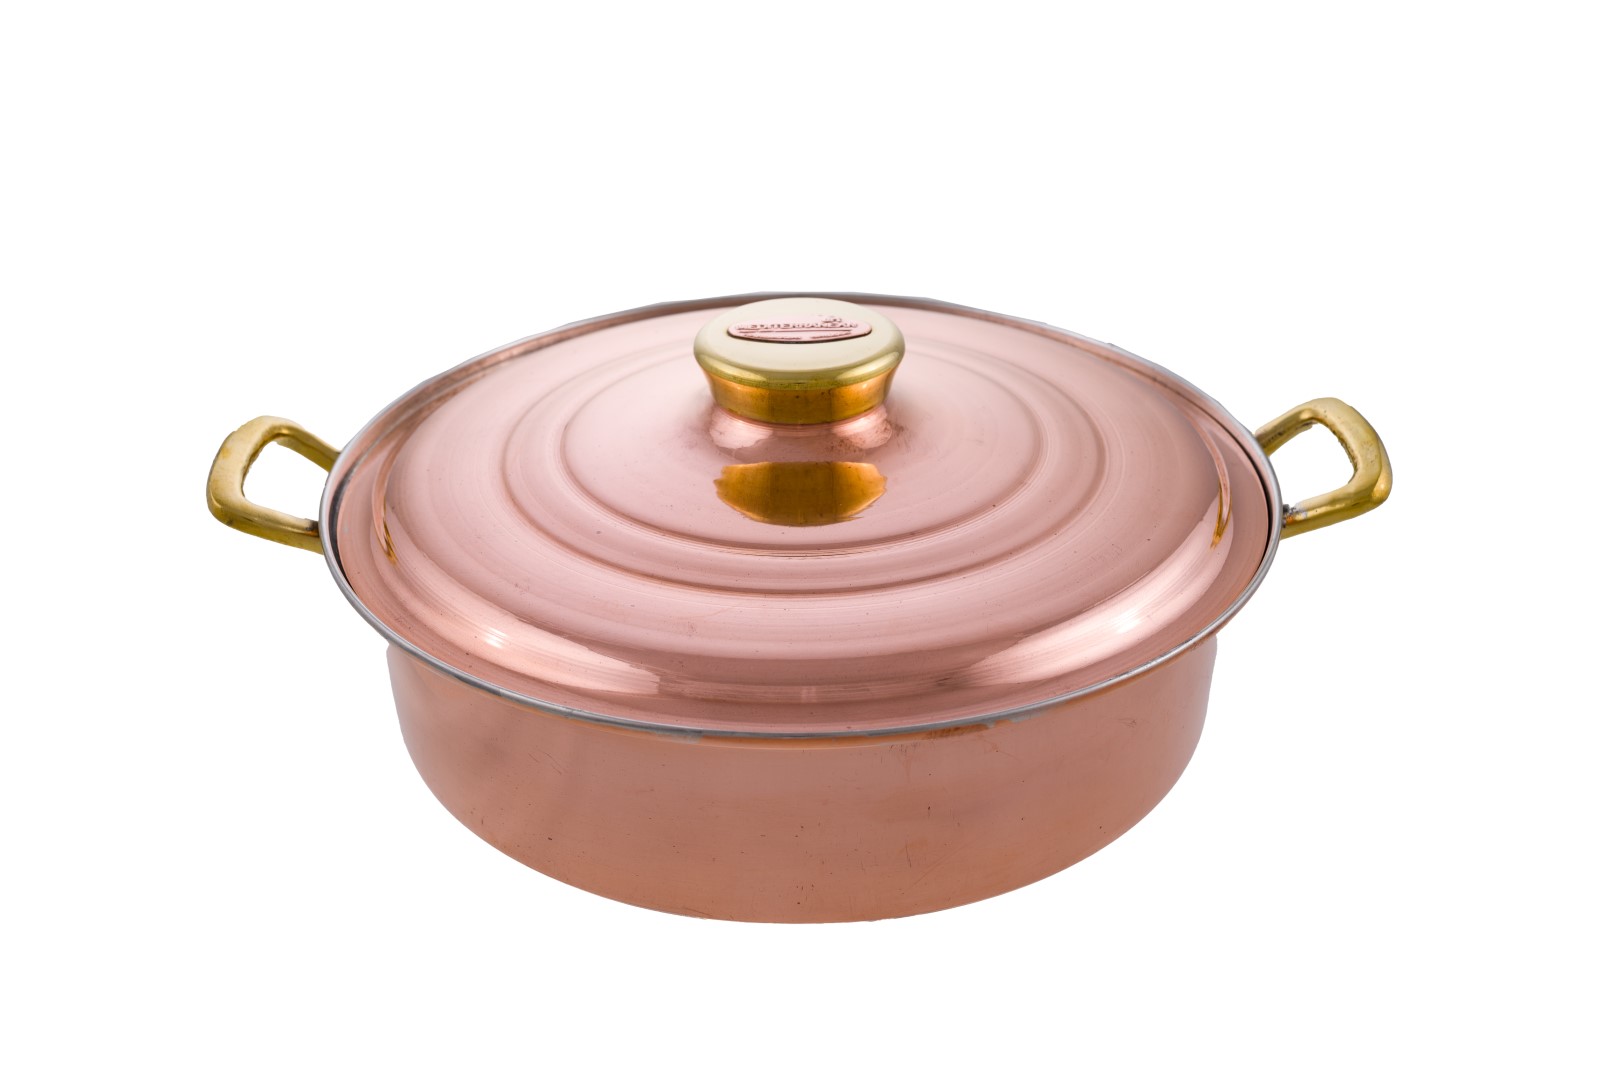 Copper Sauce Pans